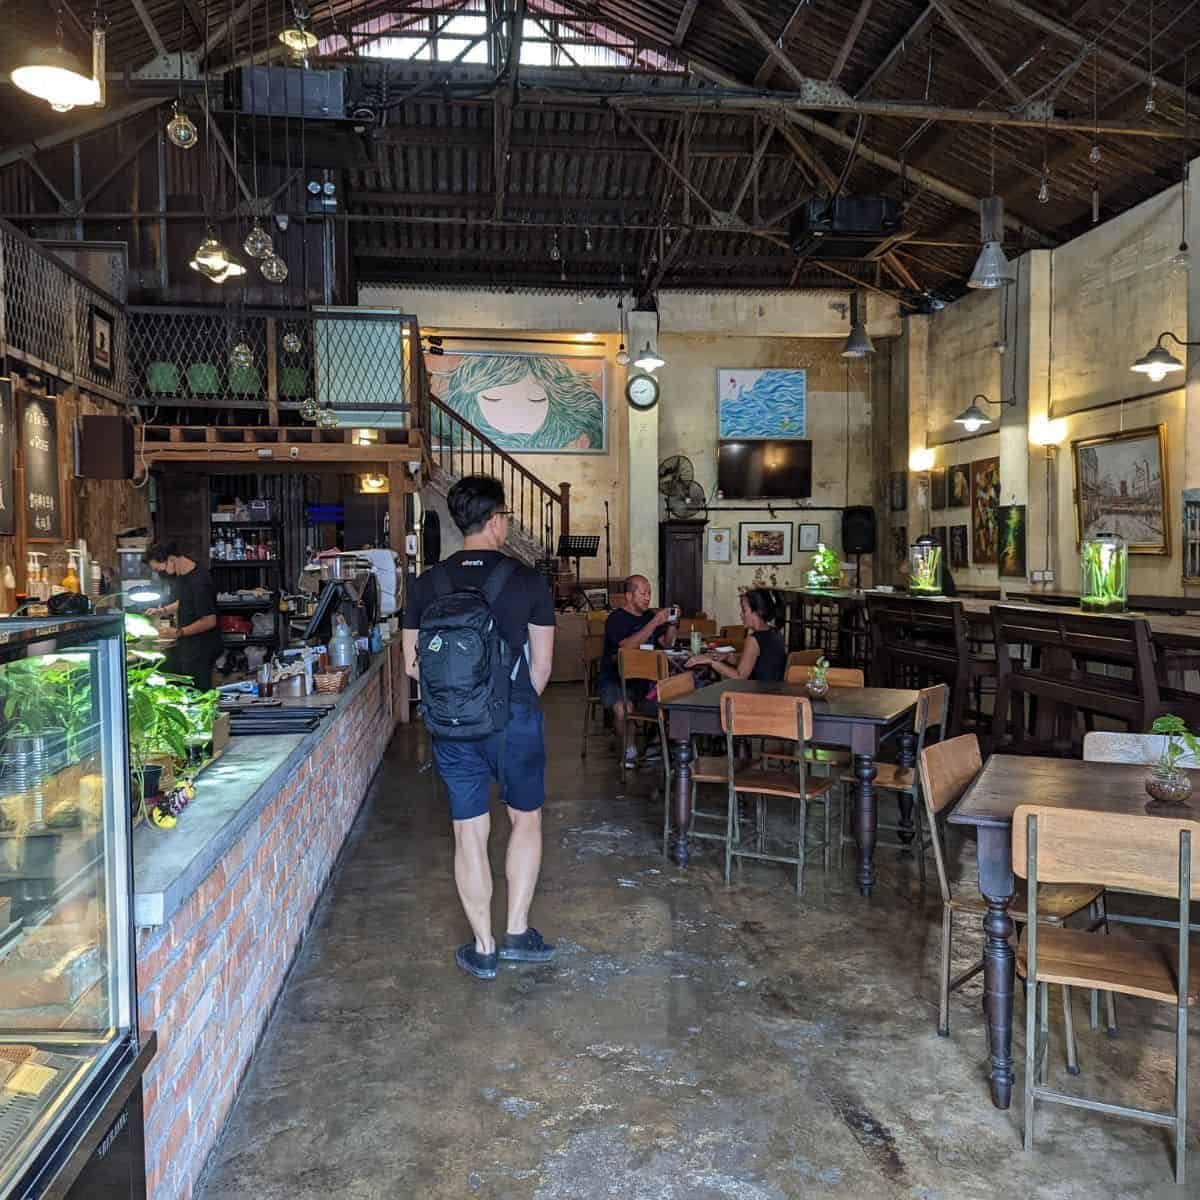 Gudang cafe interior spacious